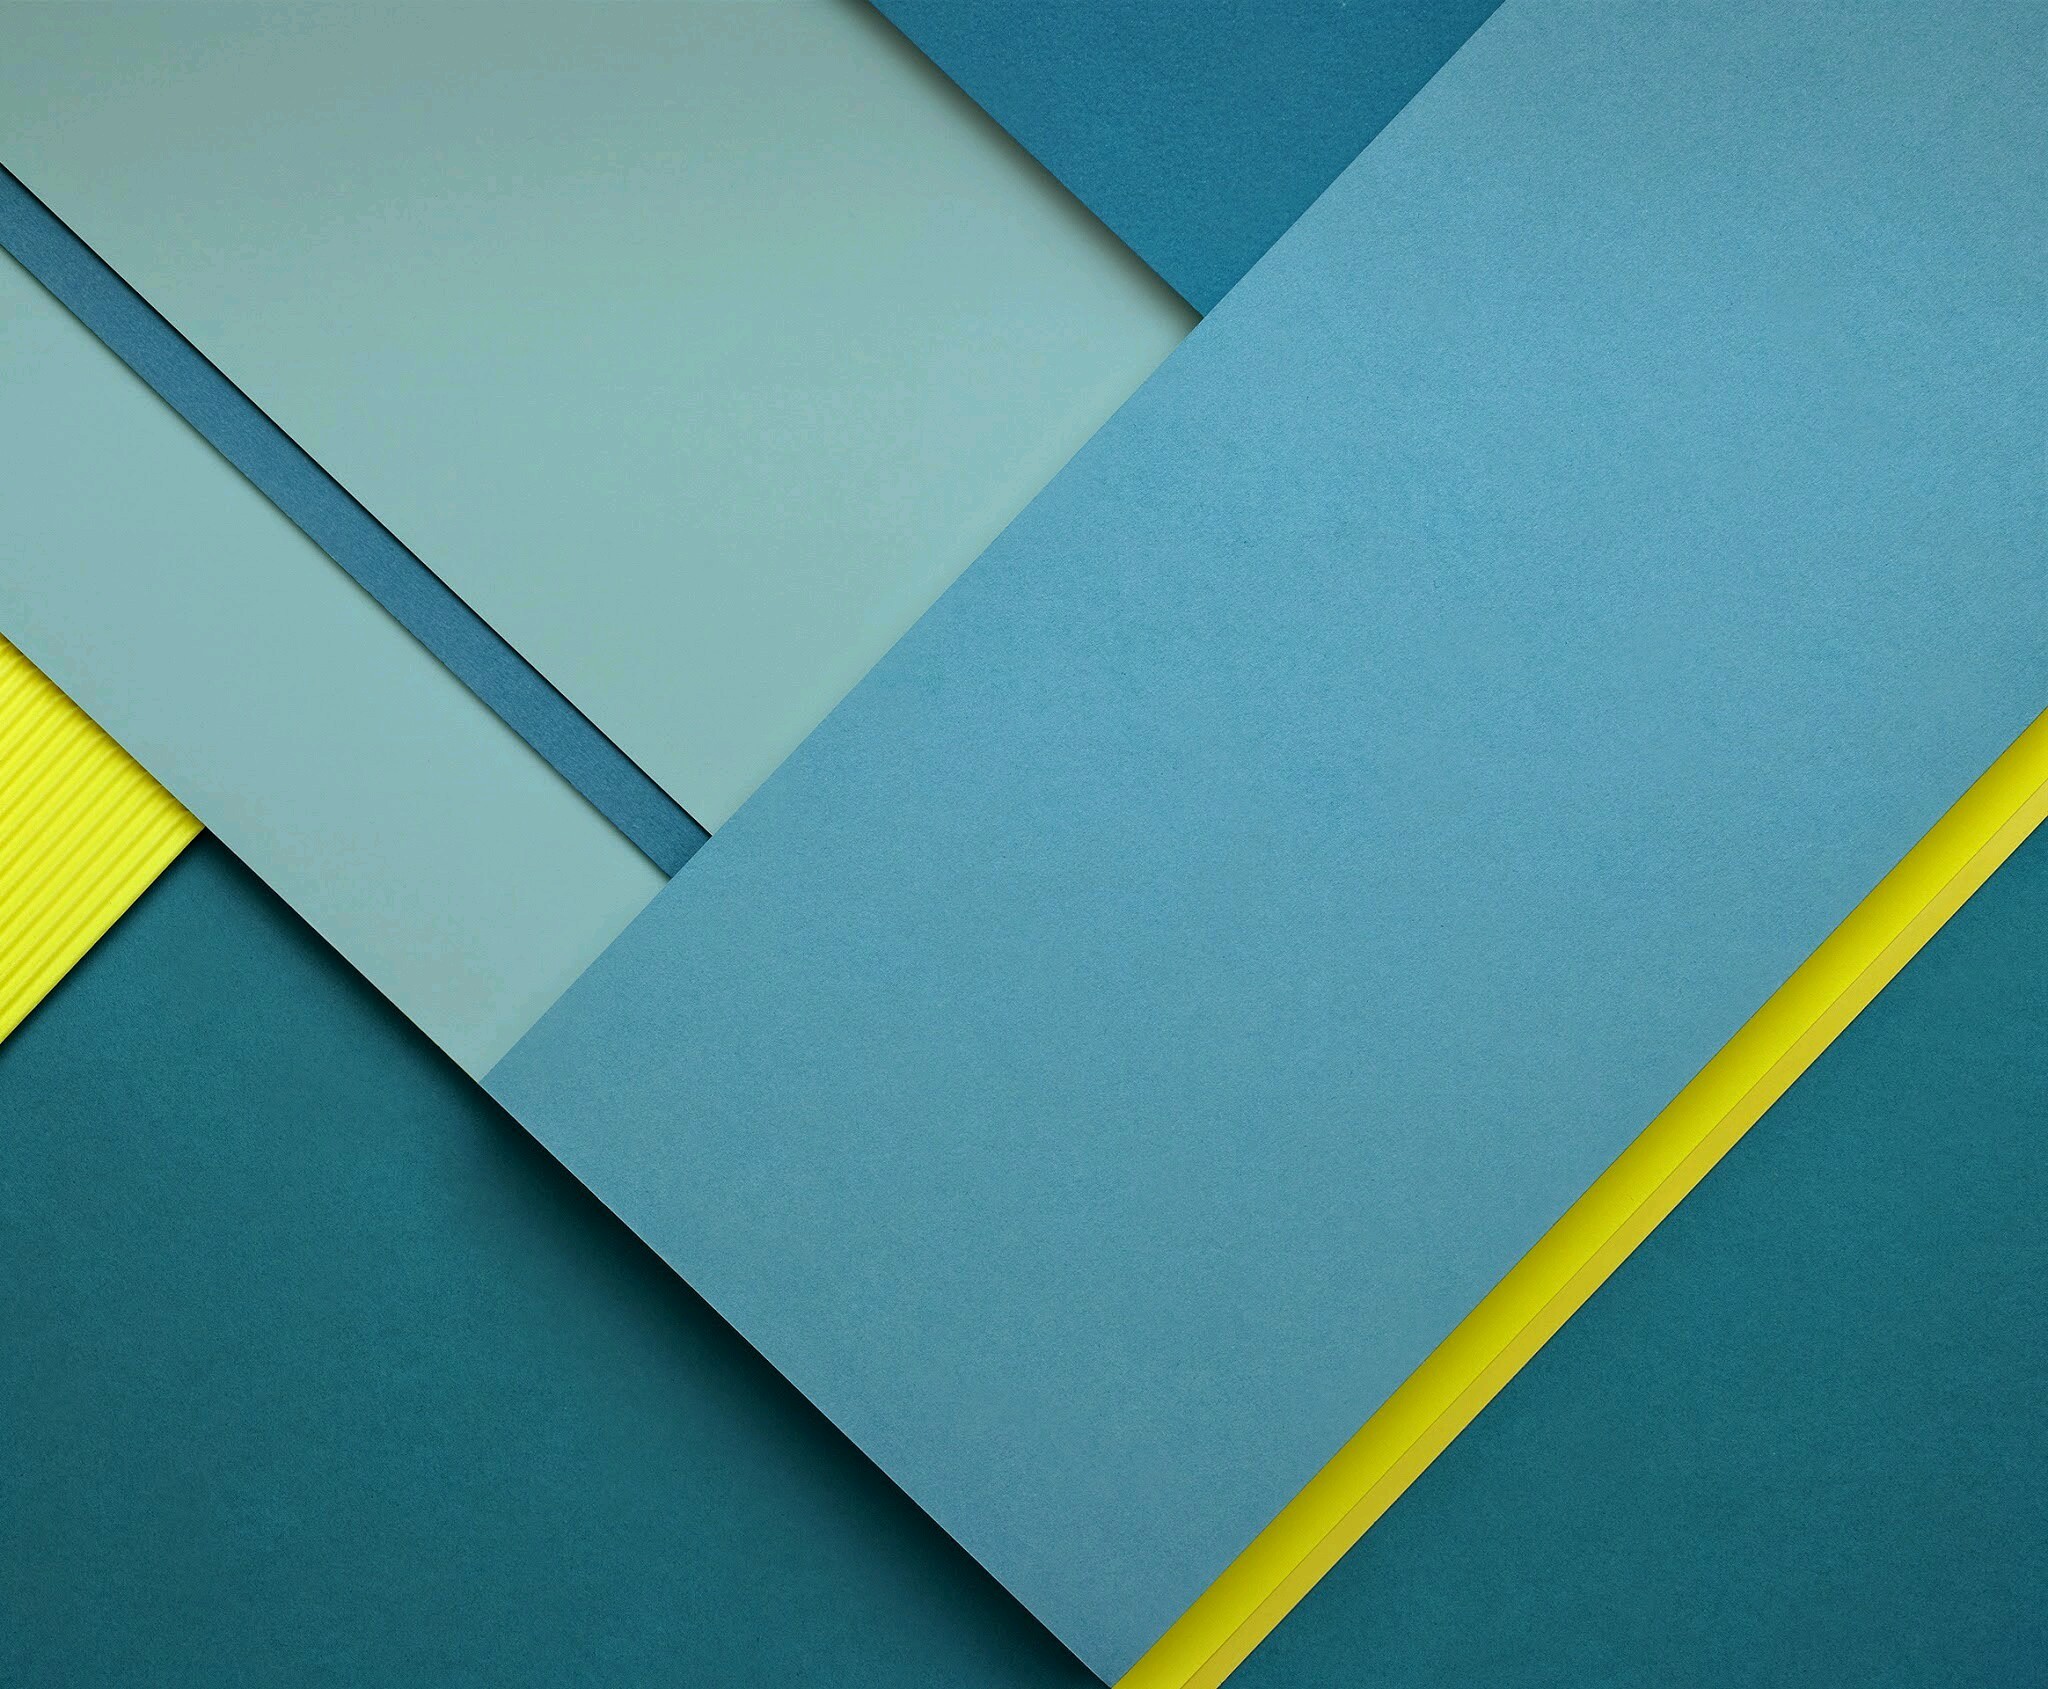 100+] Nexus 5 Wallpapers | Wallpapers.com